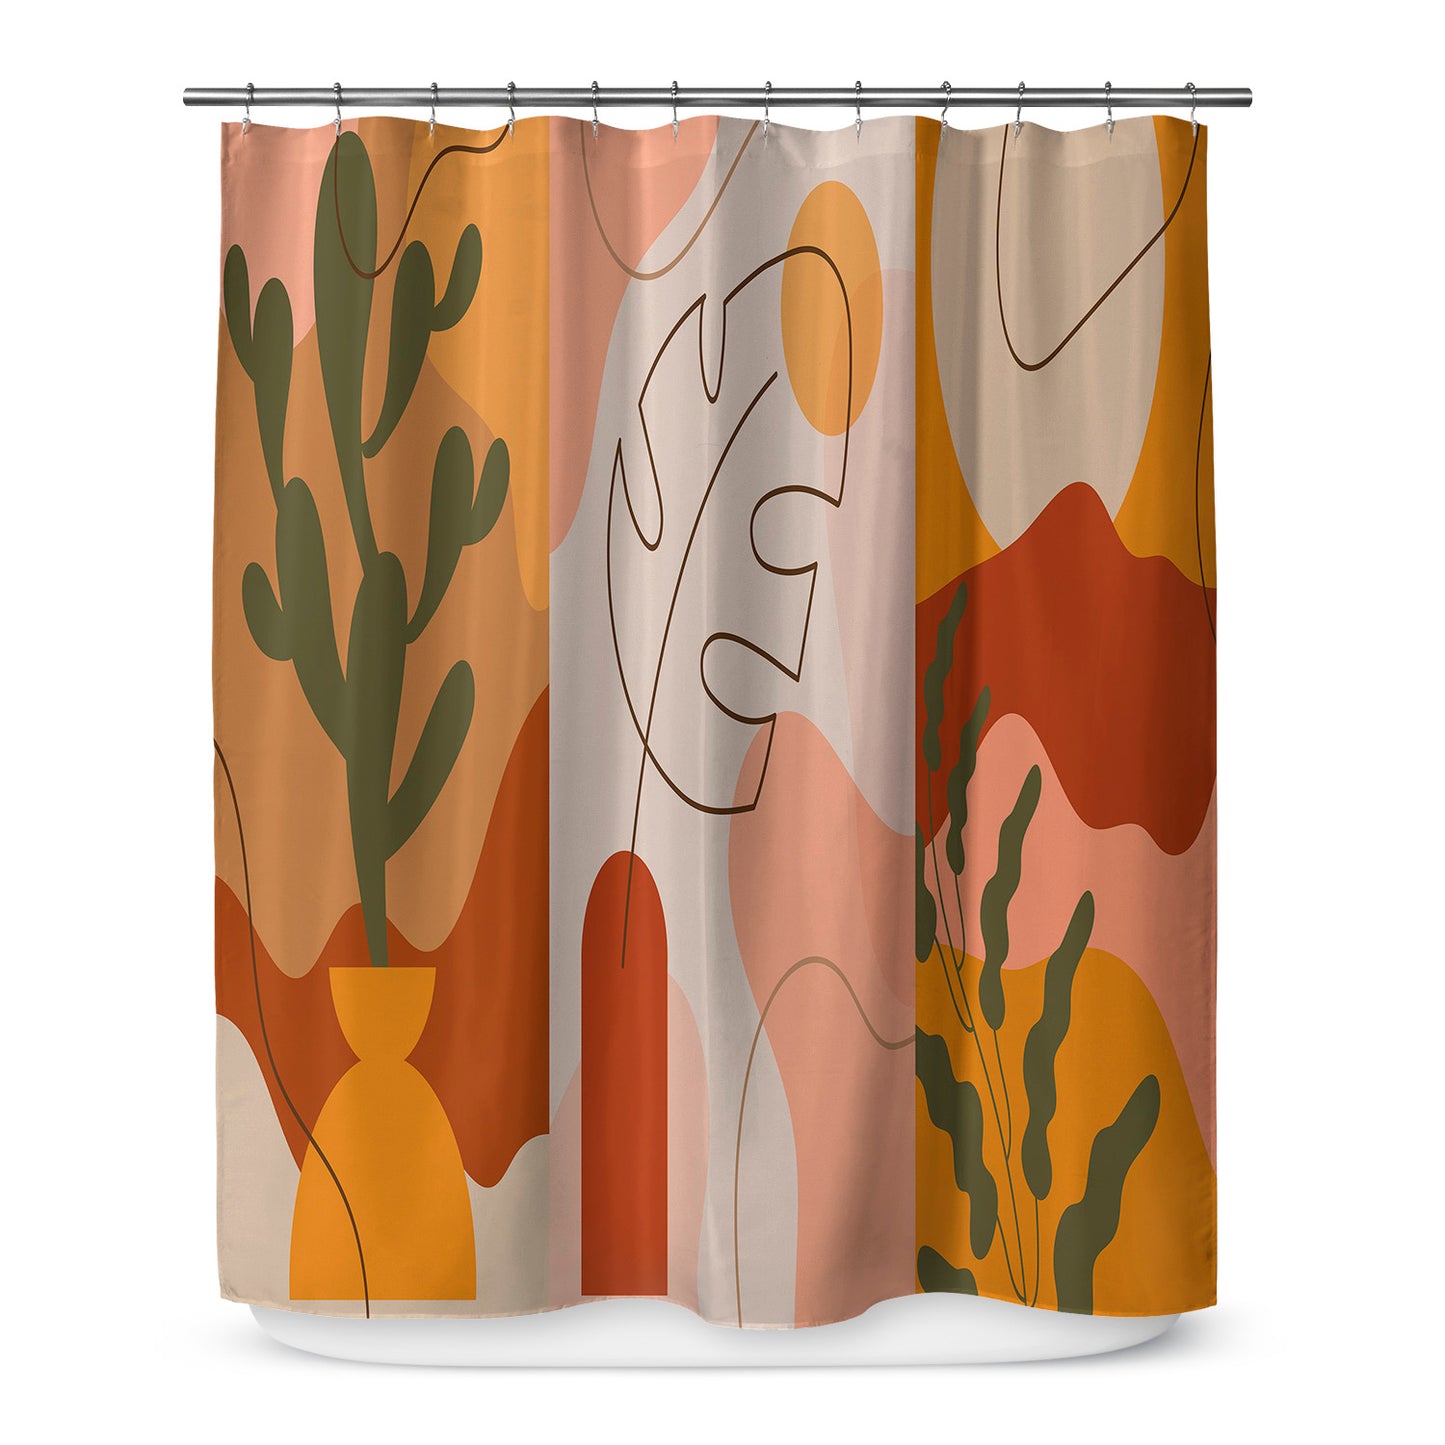 Abstract Desert Shower Curtain